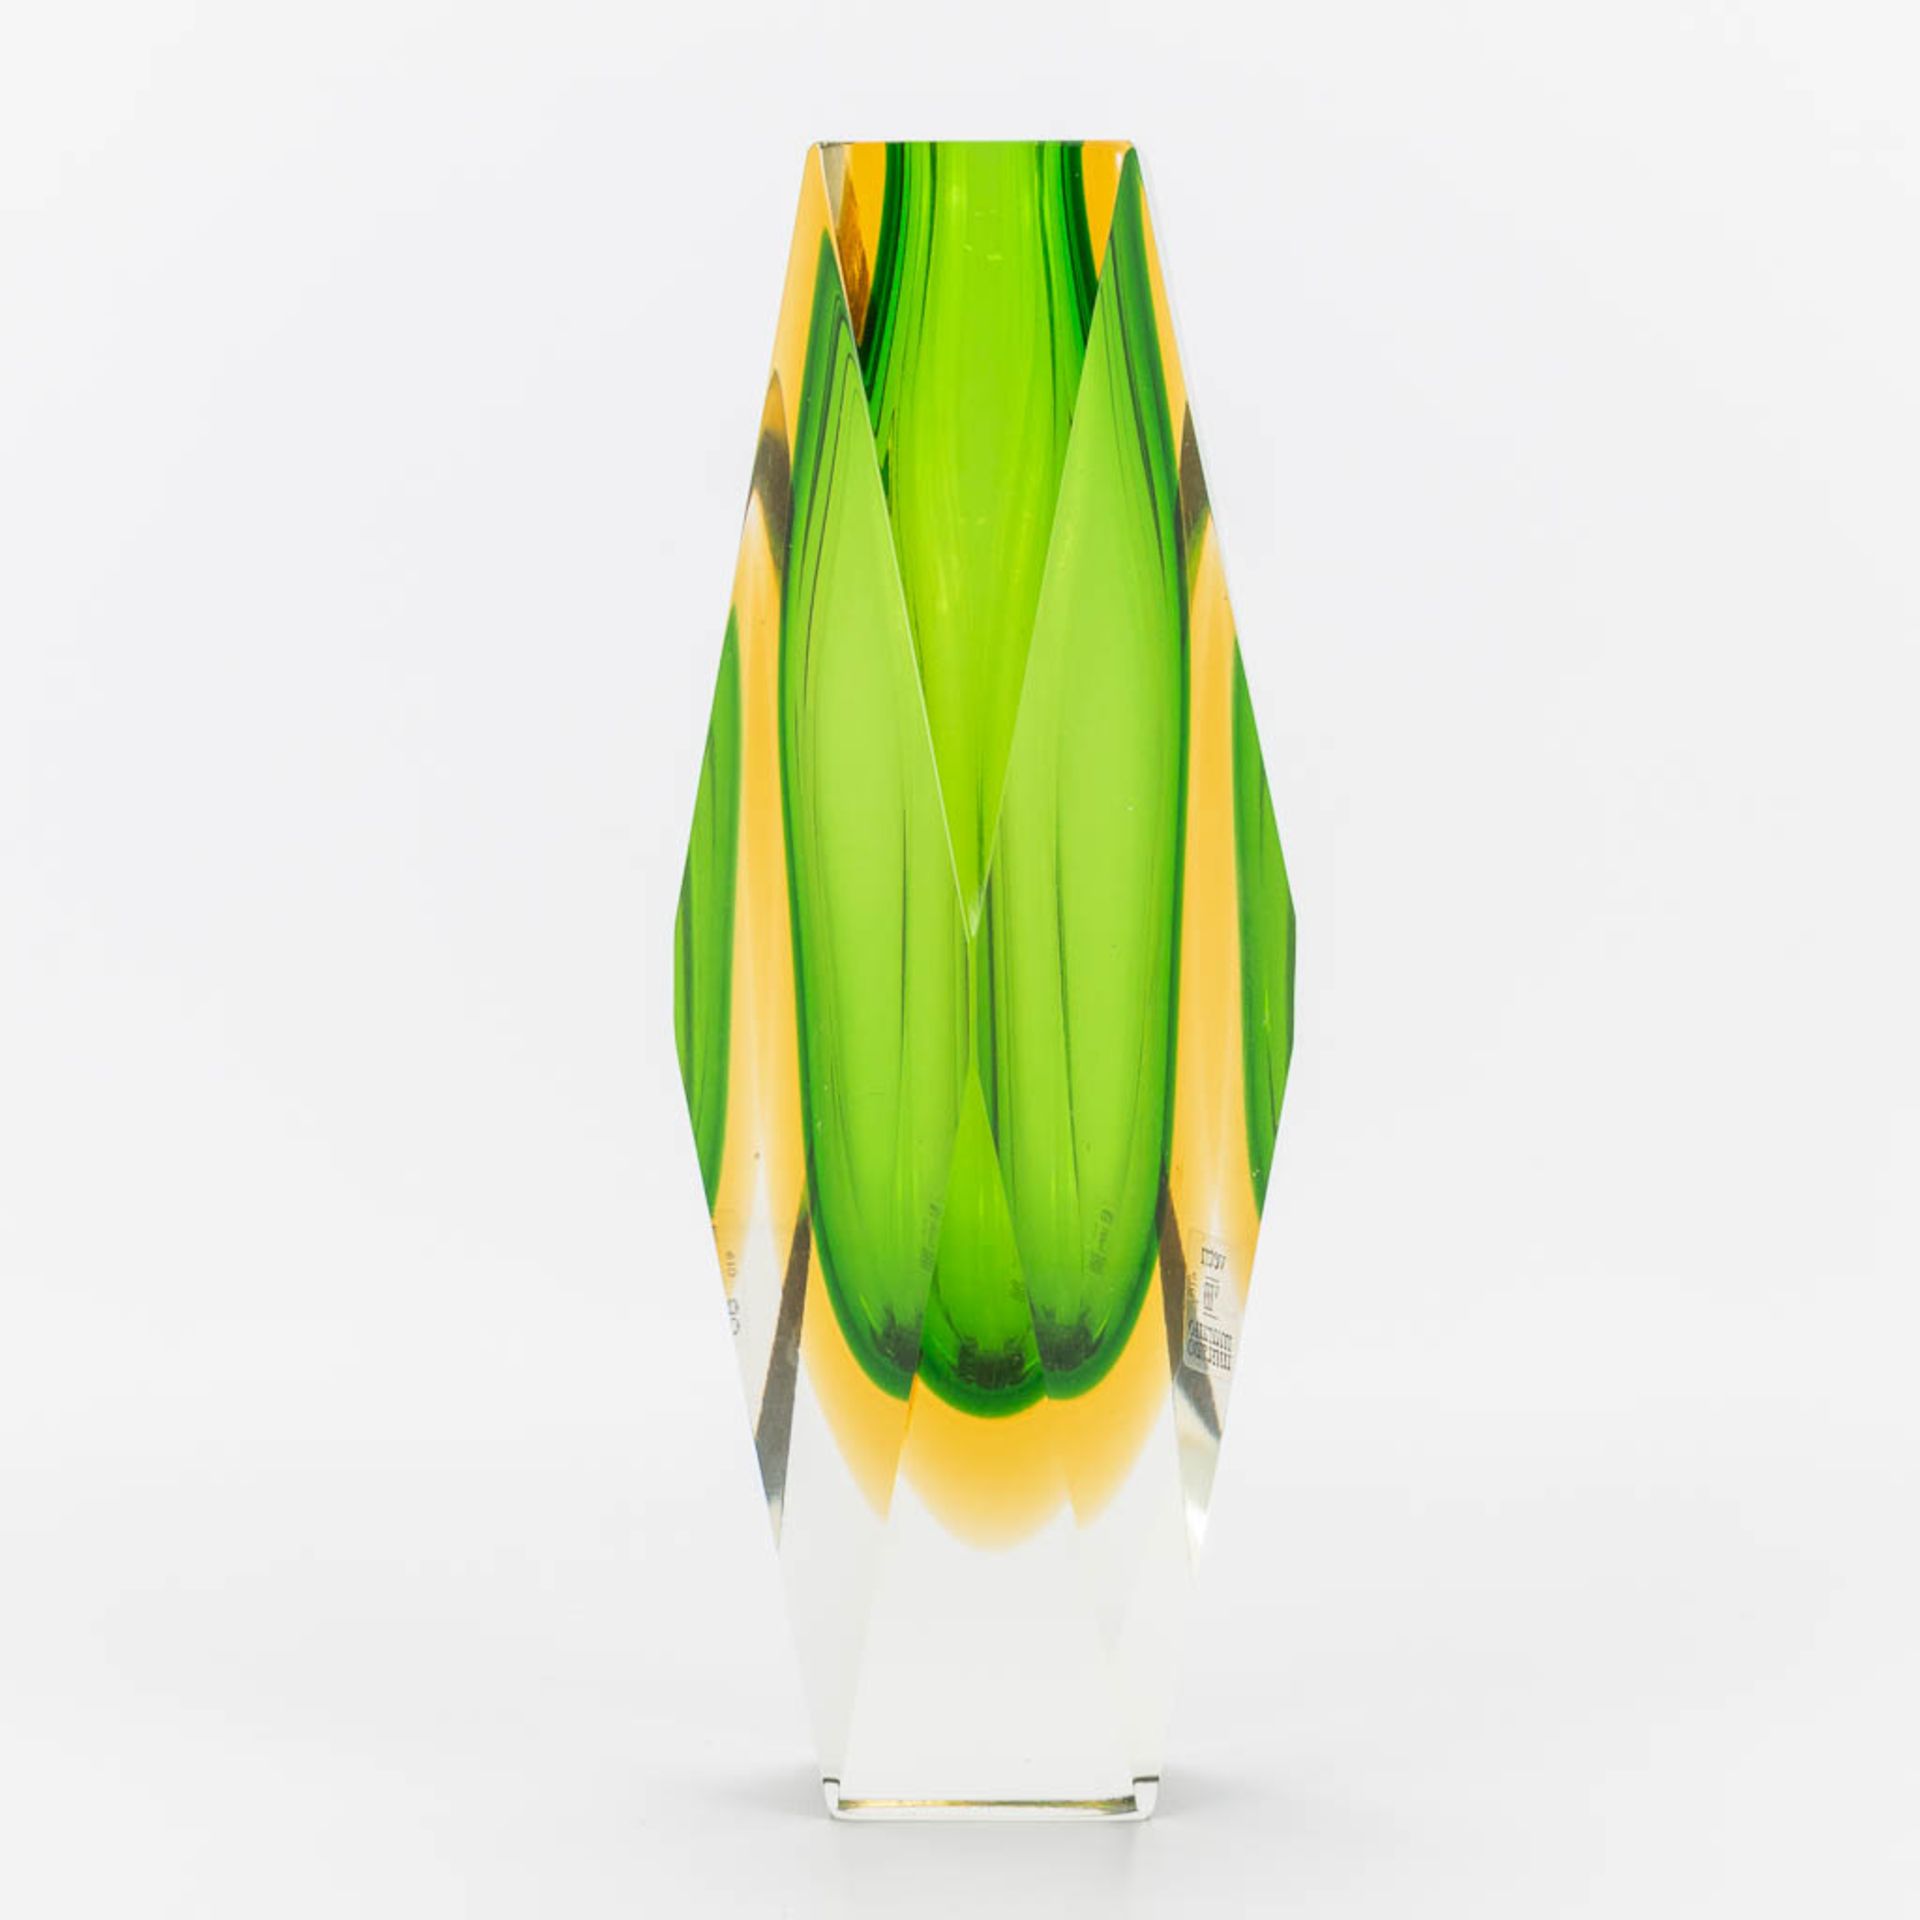 a Sommerso glass vase stickered Vetri Murano . (7 x 7 x 25 cm)